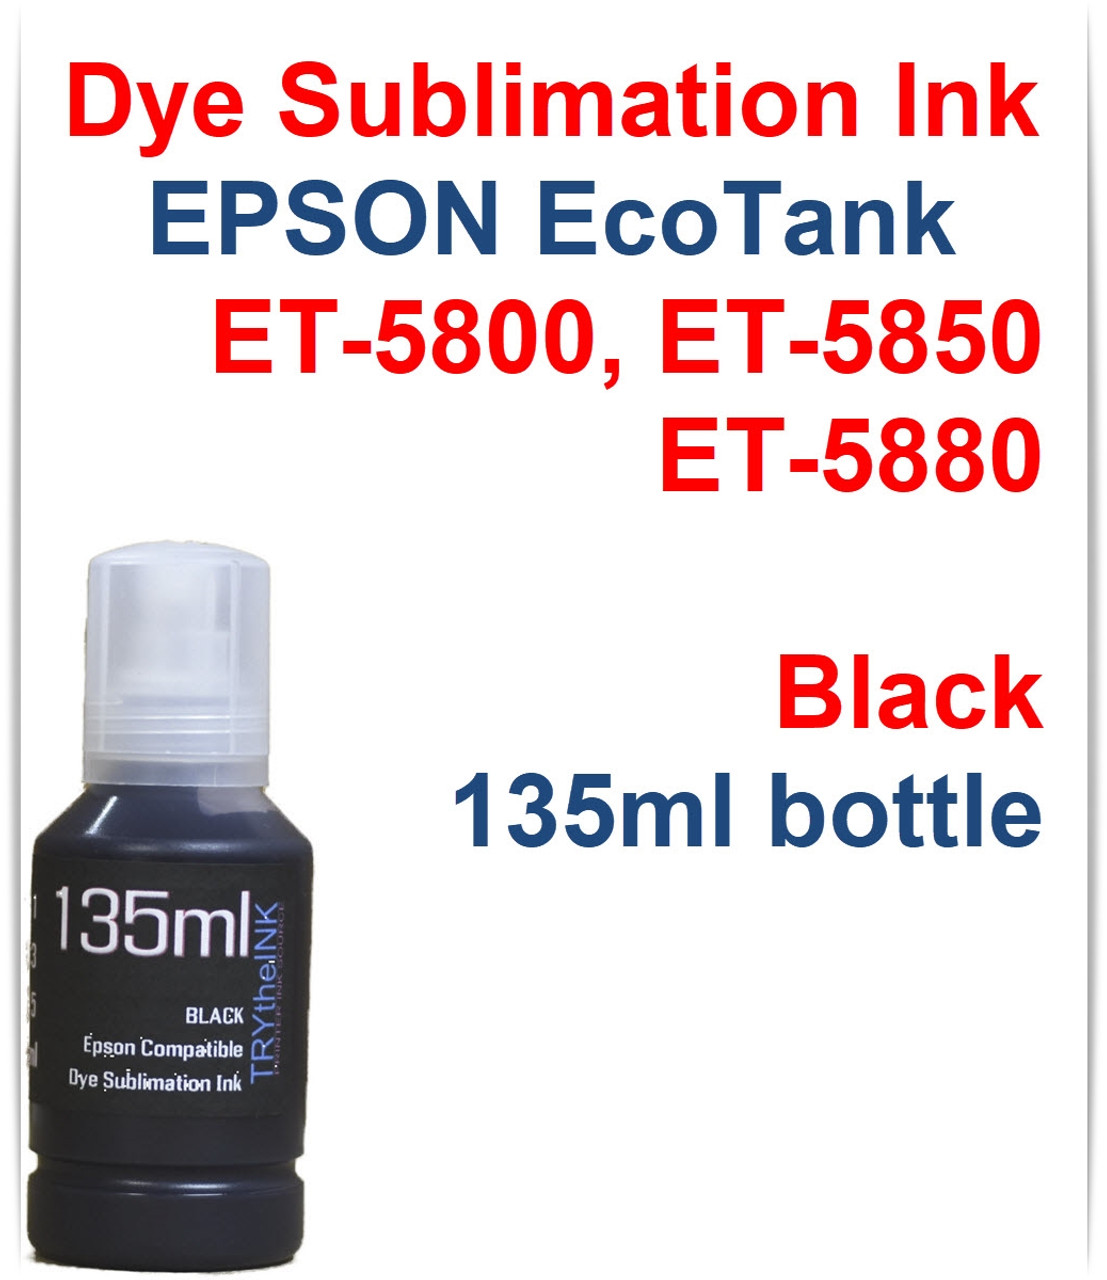 Black 135ml bottle Dye Sublimation Ink for EPSON EcoTank ET-5800 ET-5850 ET-5880 Printer